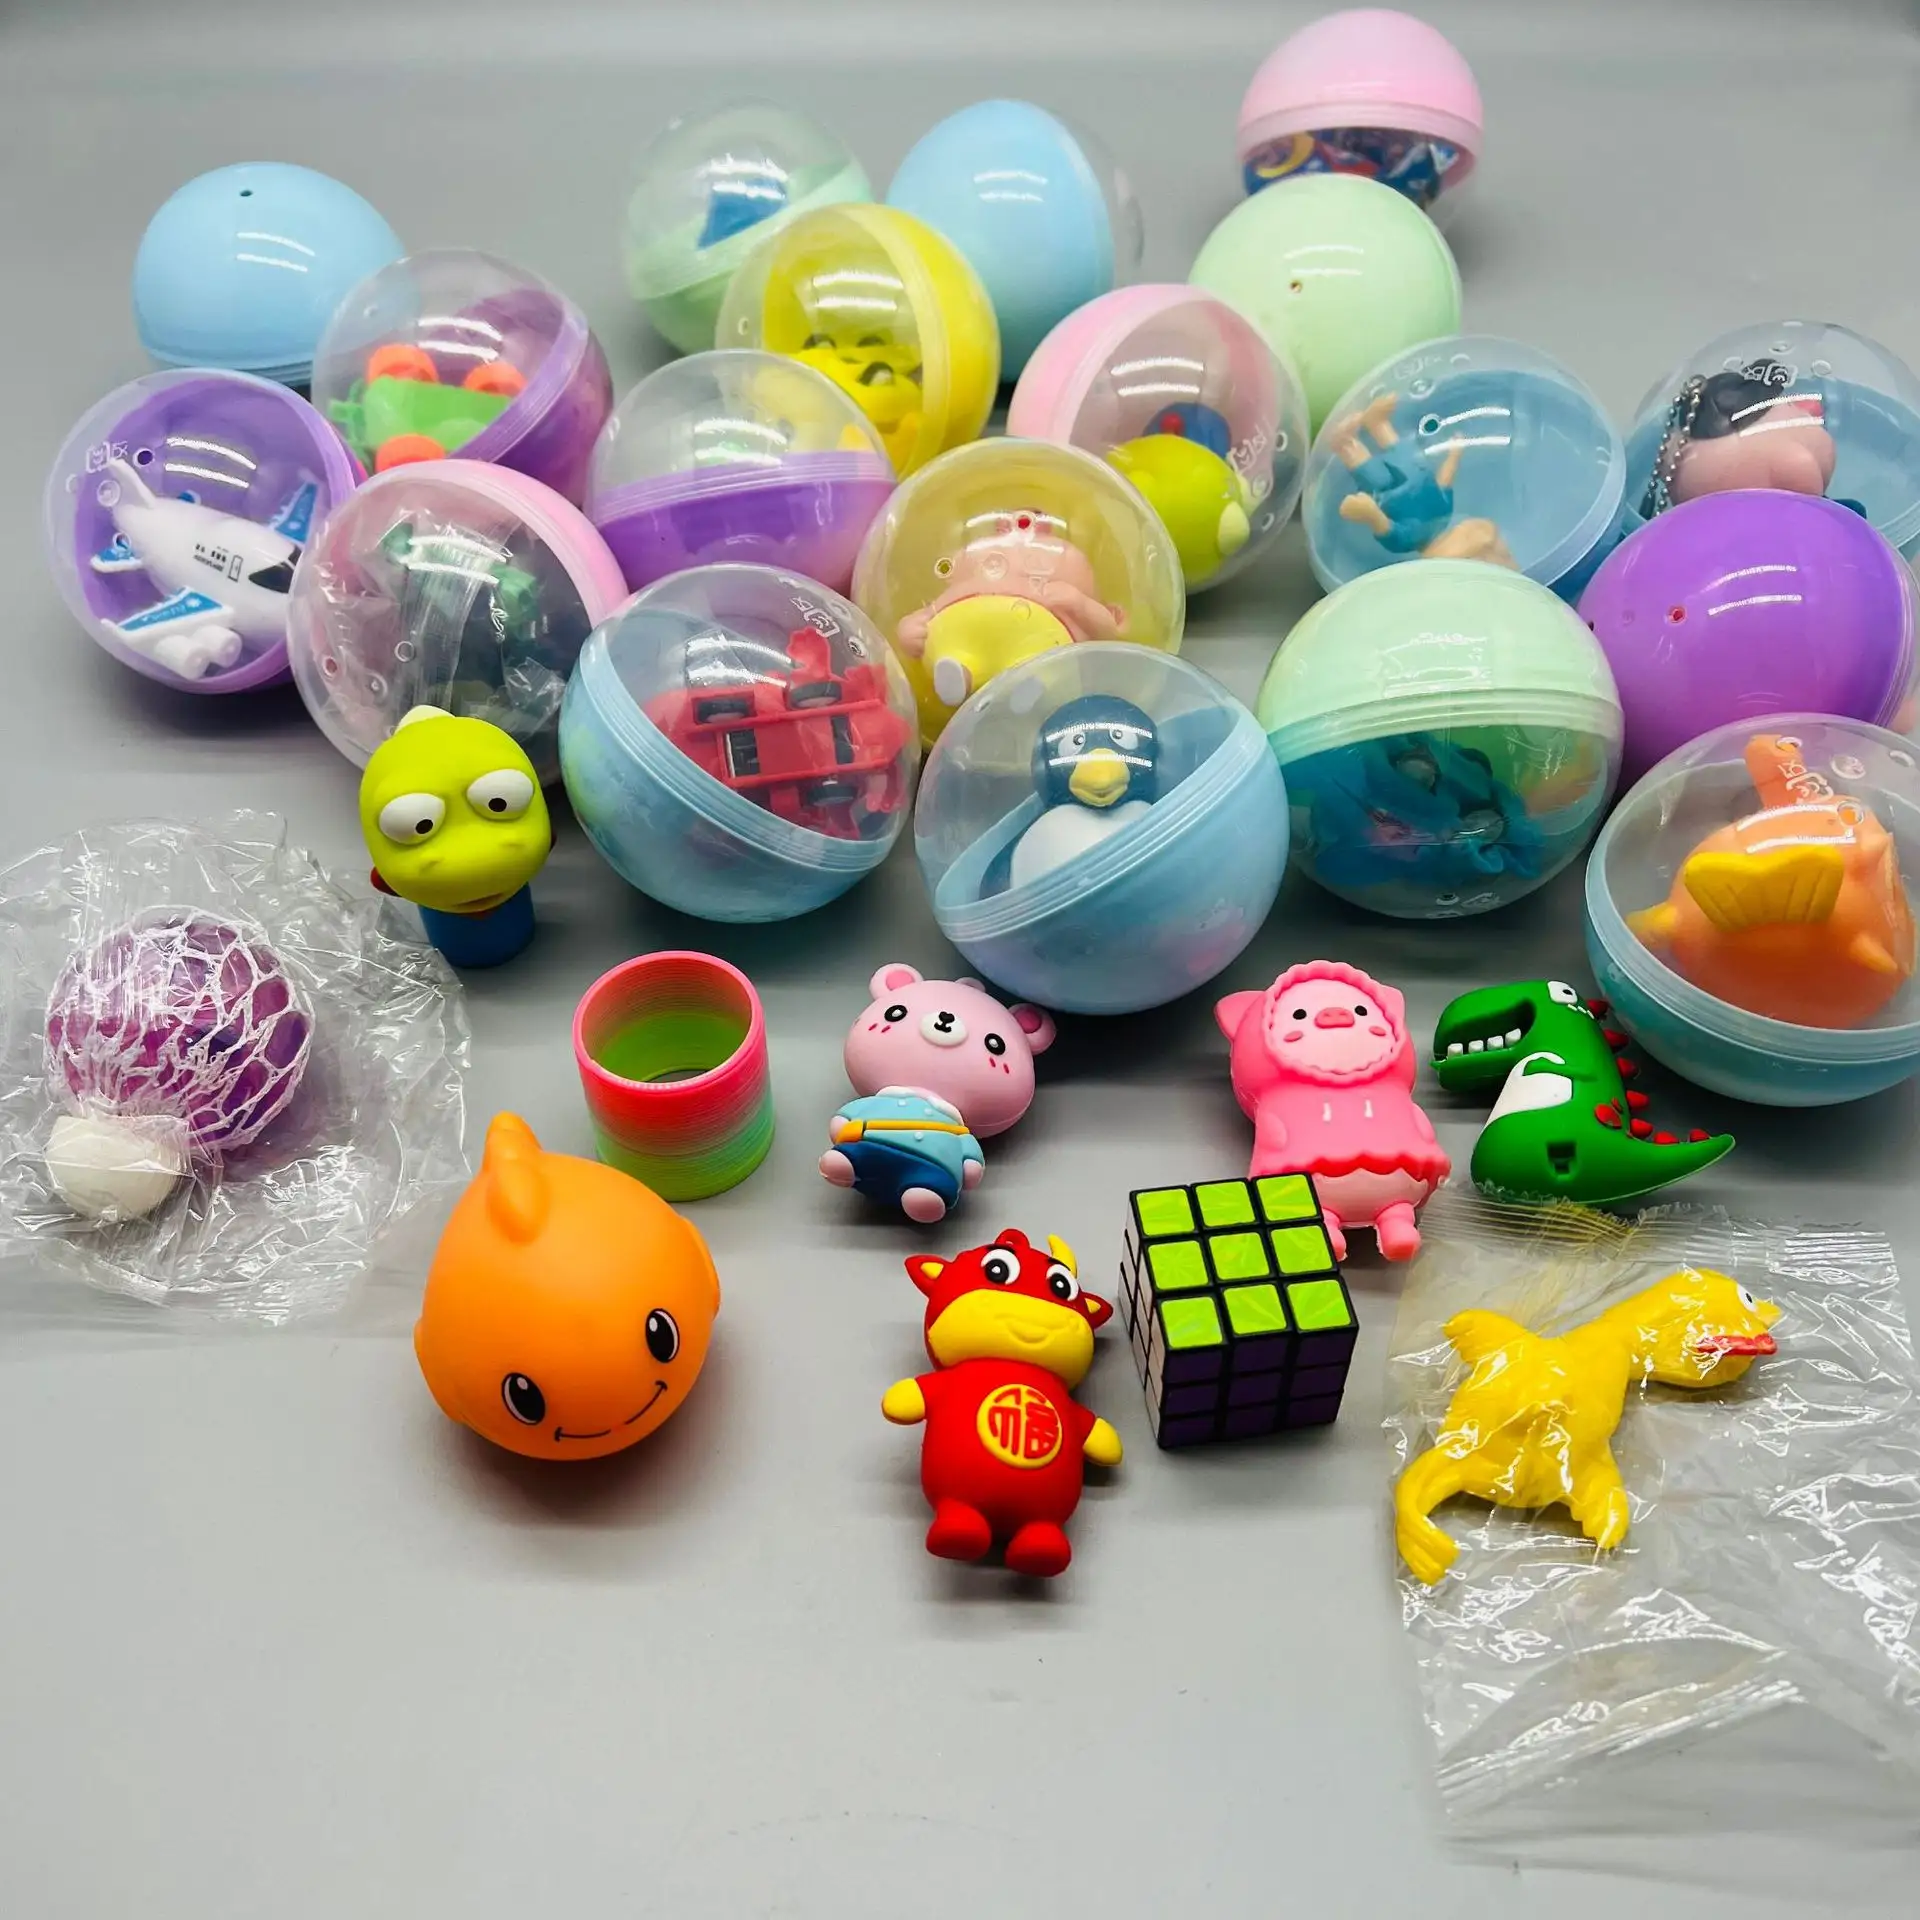 Commercio all'ingrosso di 50g capsule di plastica giocattoli grandi dimensioni 75*75mm sorpresa bambola capsula uovo giocattolo per gashapon macchina giocattolo prezioso per bambini regali